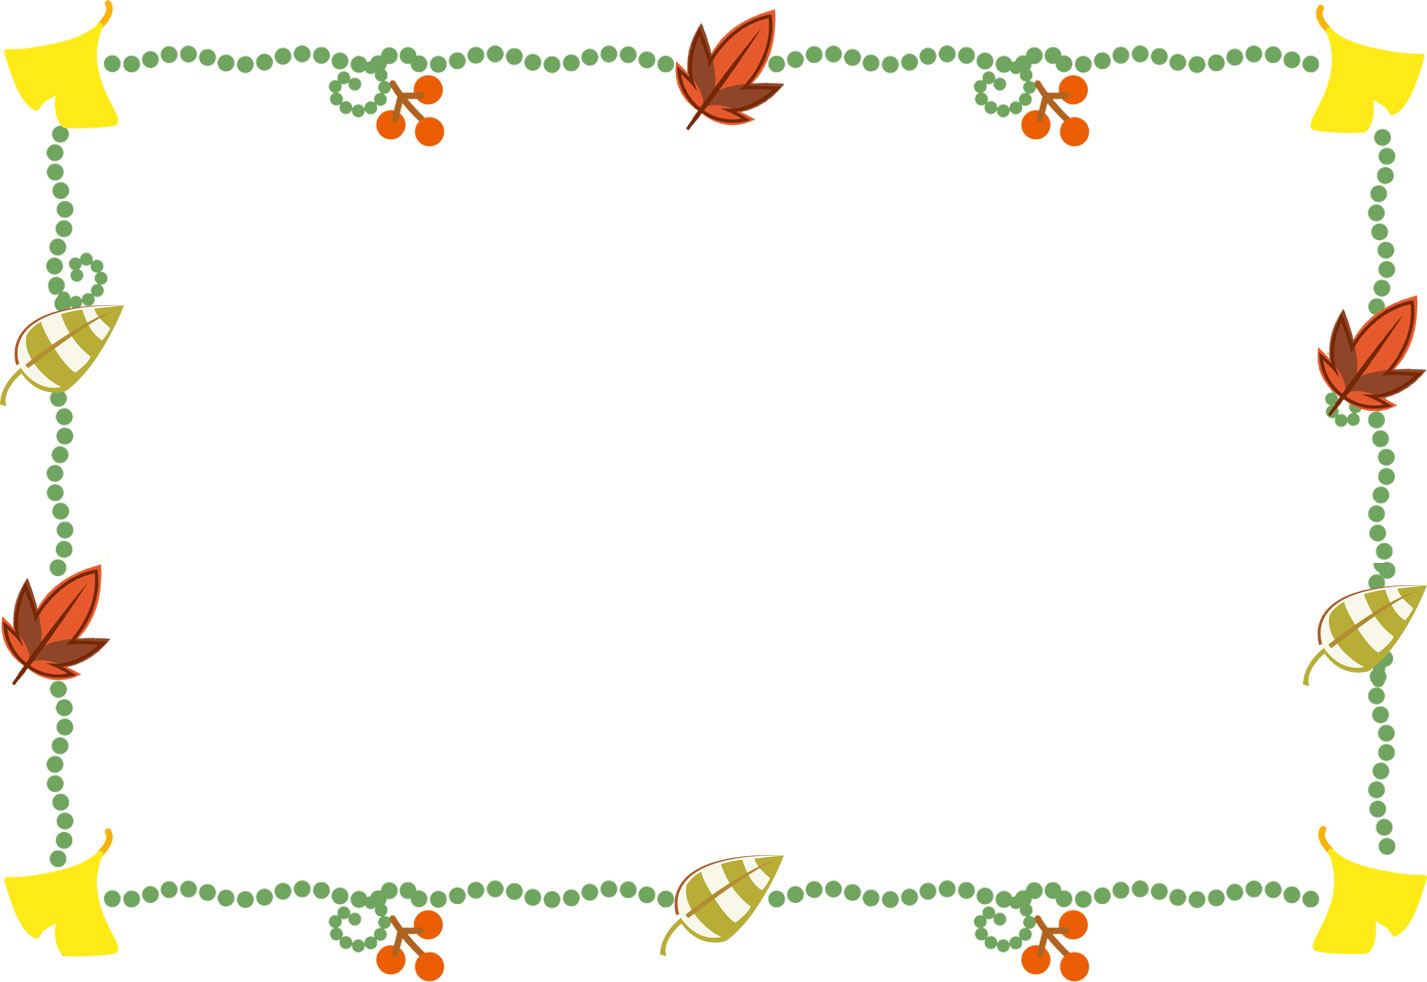 秋のイラストno 374 フレーム 葉っぱ 銀杏 無料のフリー素材集 花鳥風月